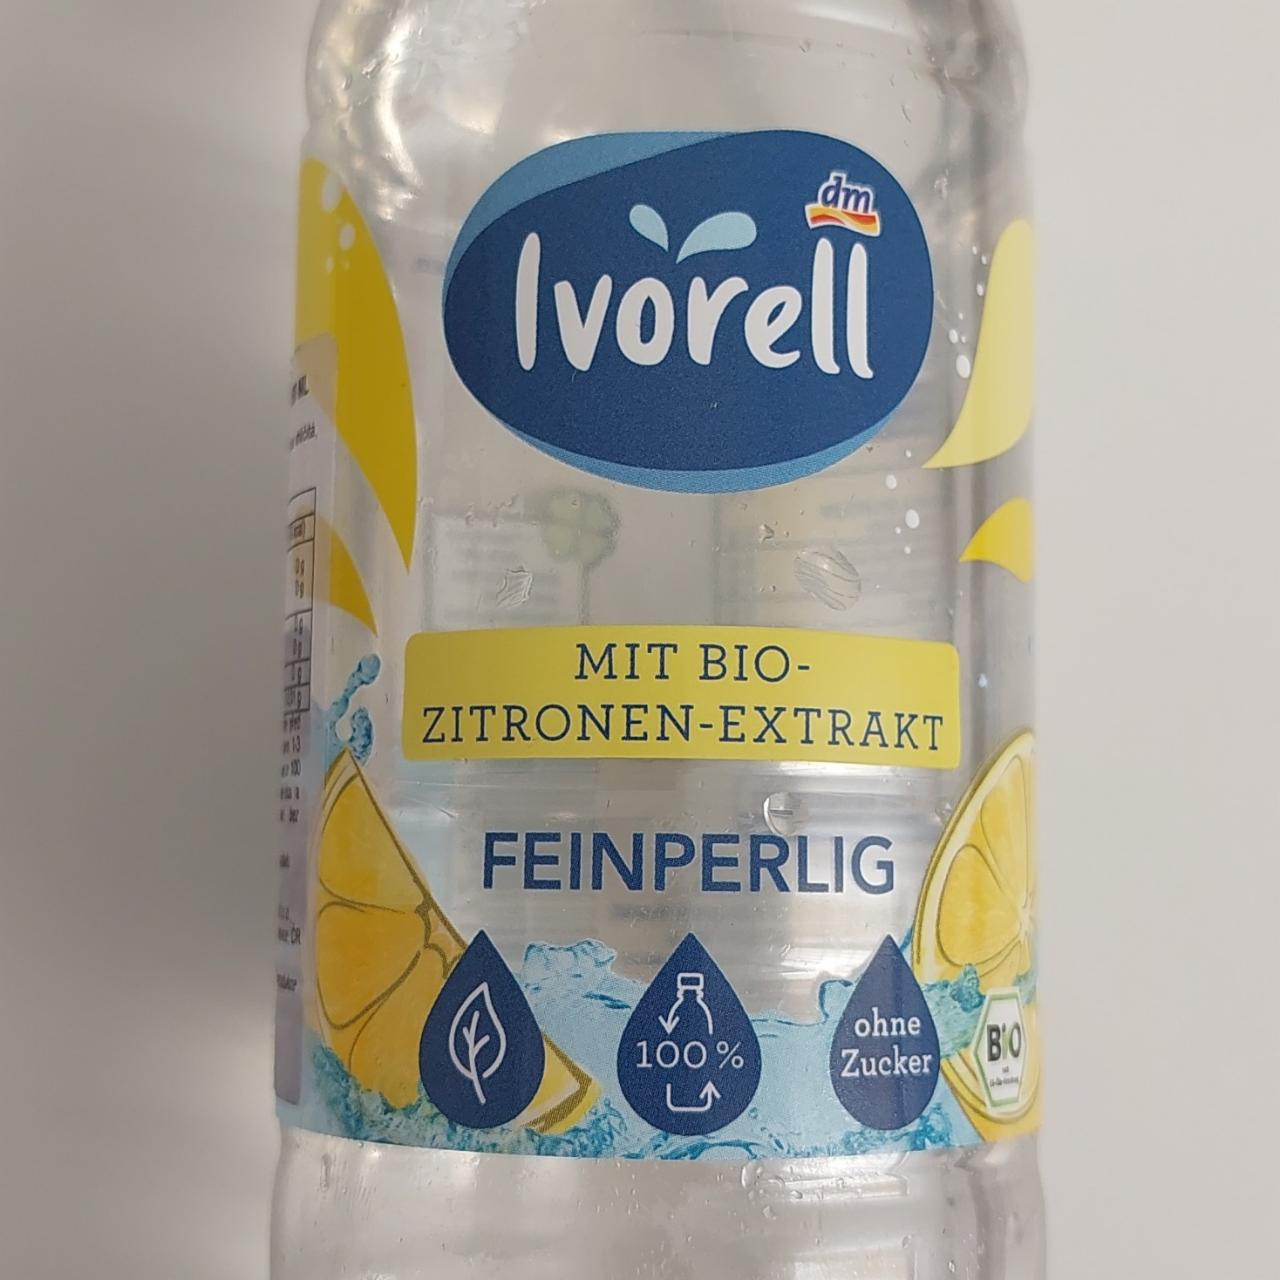 Fotografie - Mineralwasser mit Bio-Zitronen-Extrakt Feinperlig Ivorell